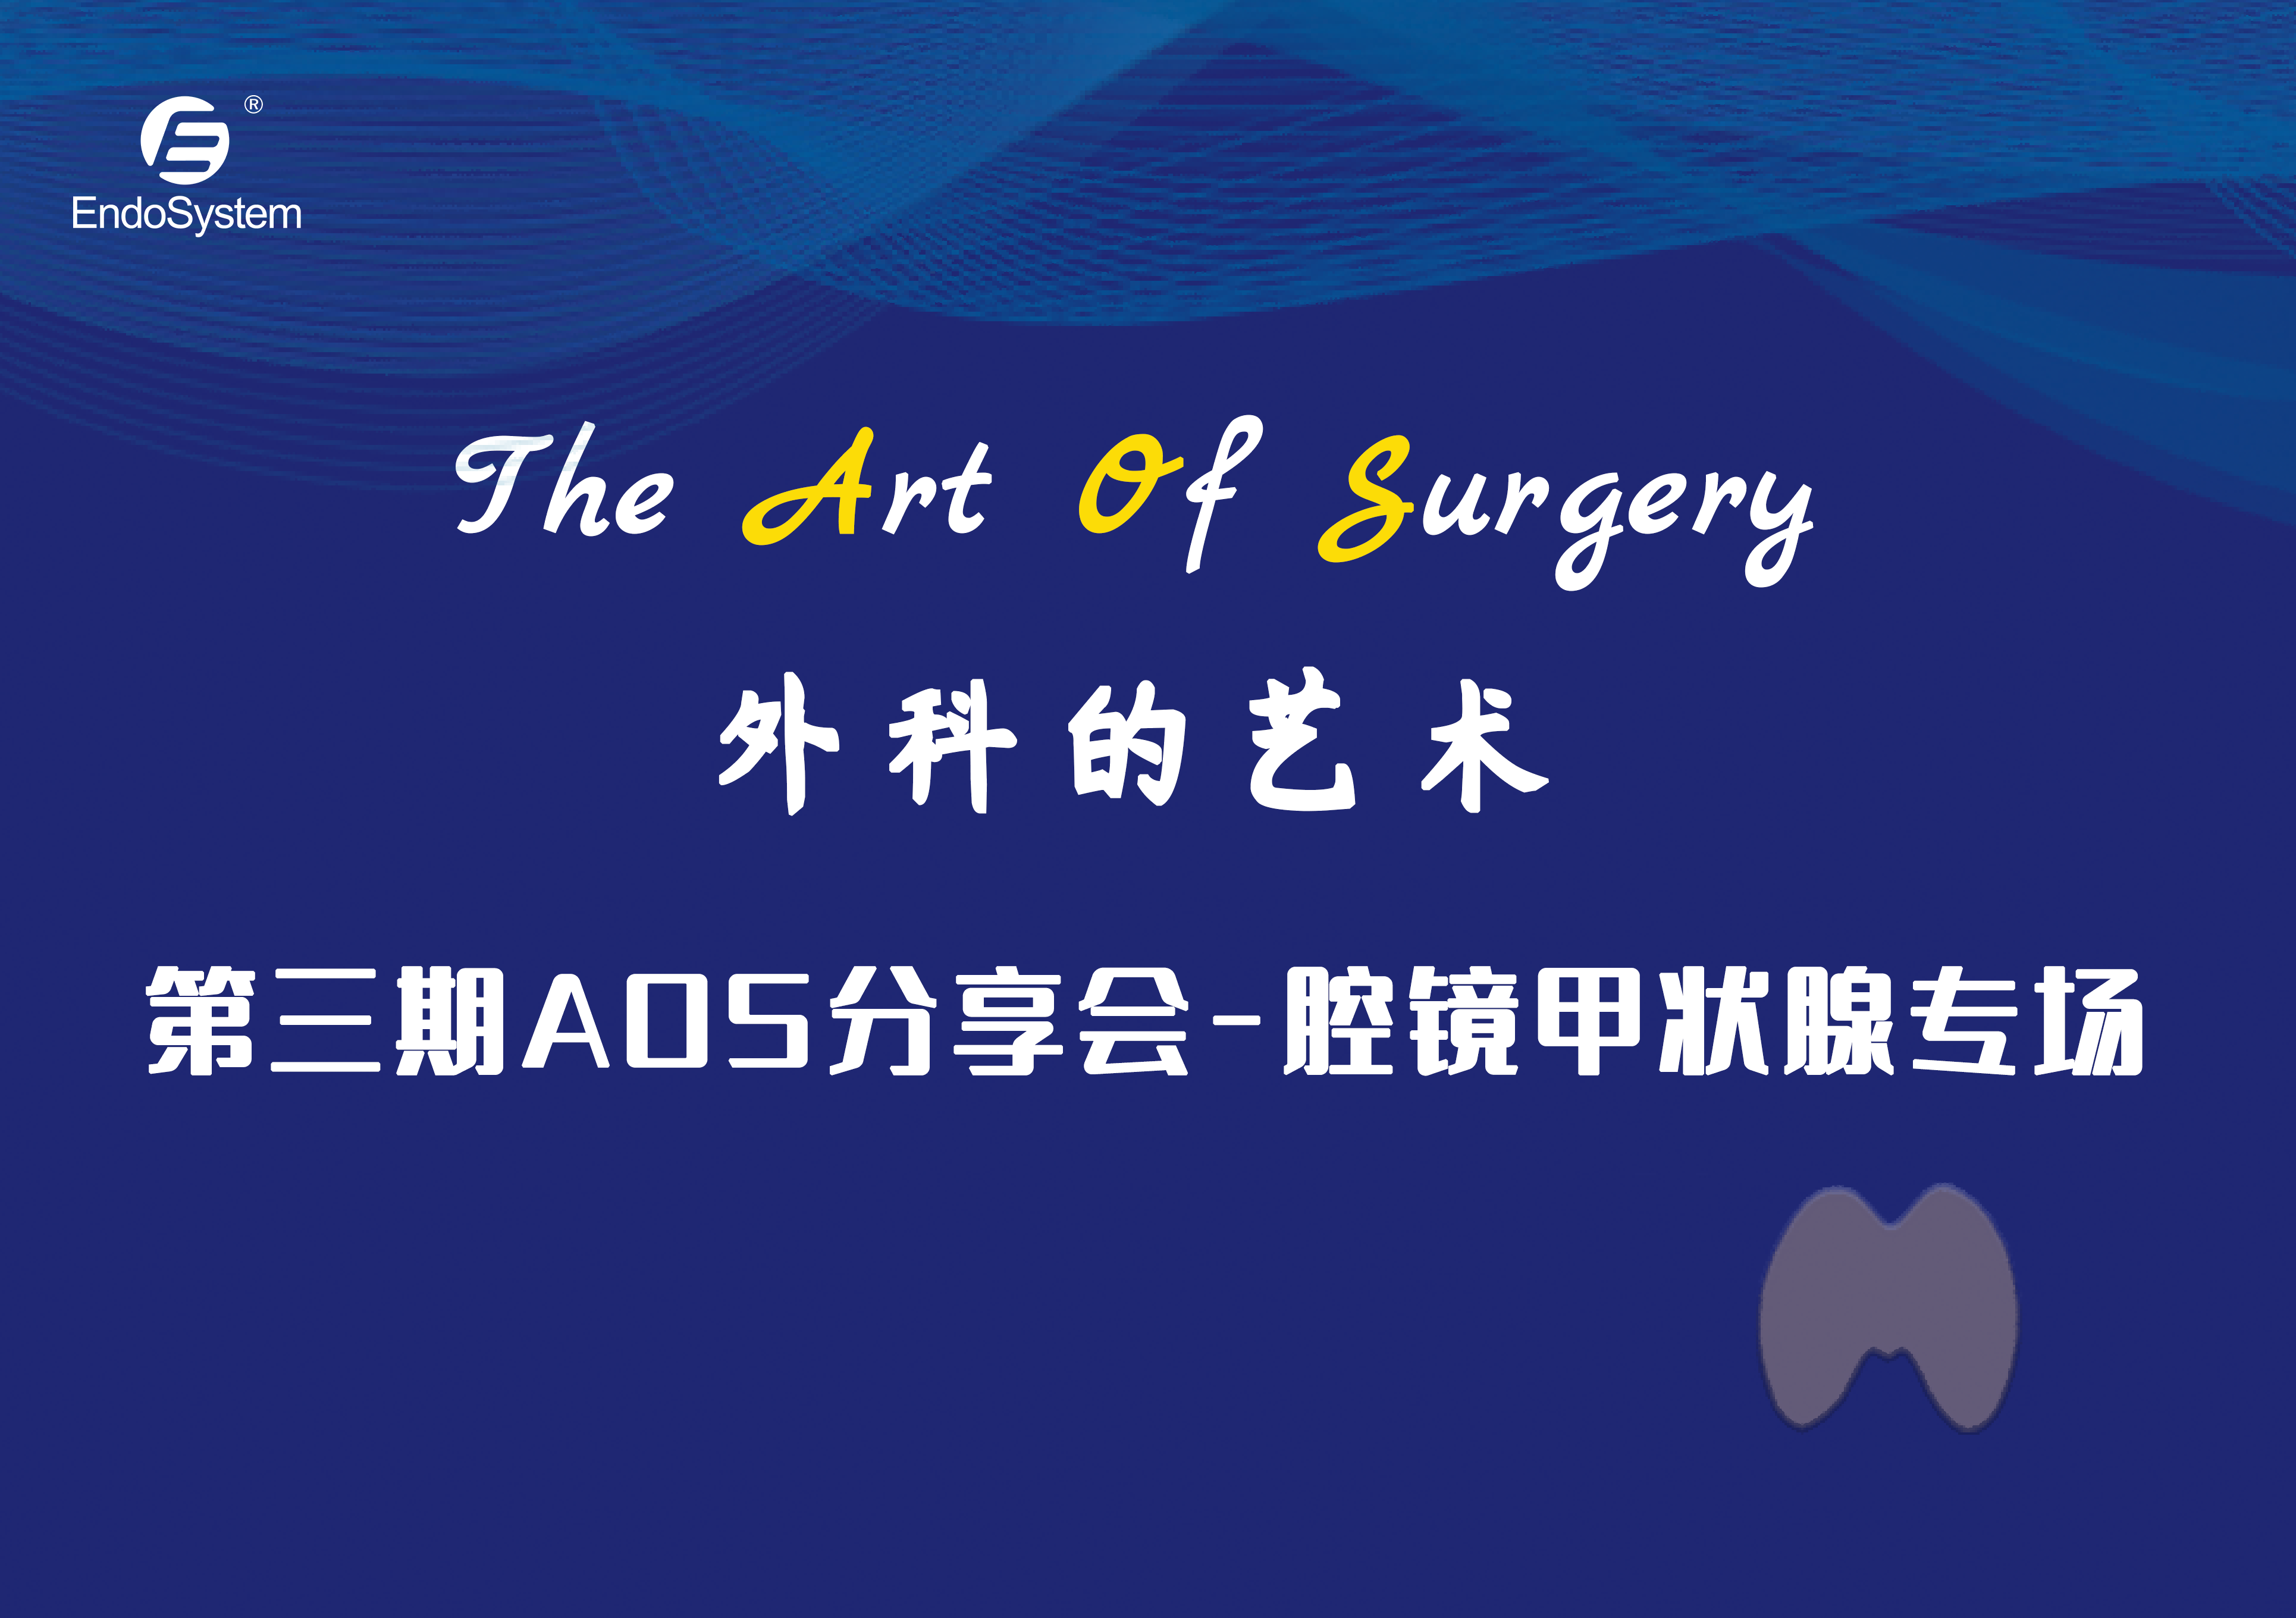 精彩回顾|英特姆医疗”The Art of Surgery”第三期分享会议-腔镜甲状腺专场顺利举办